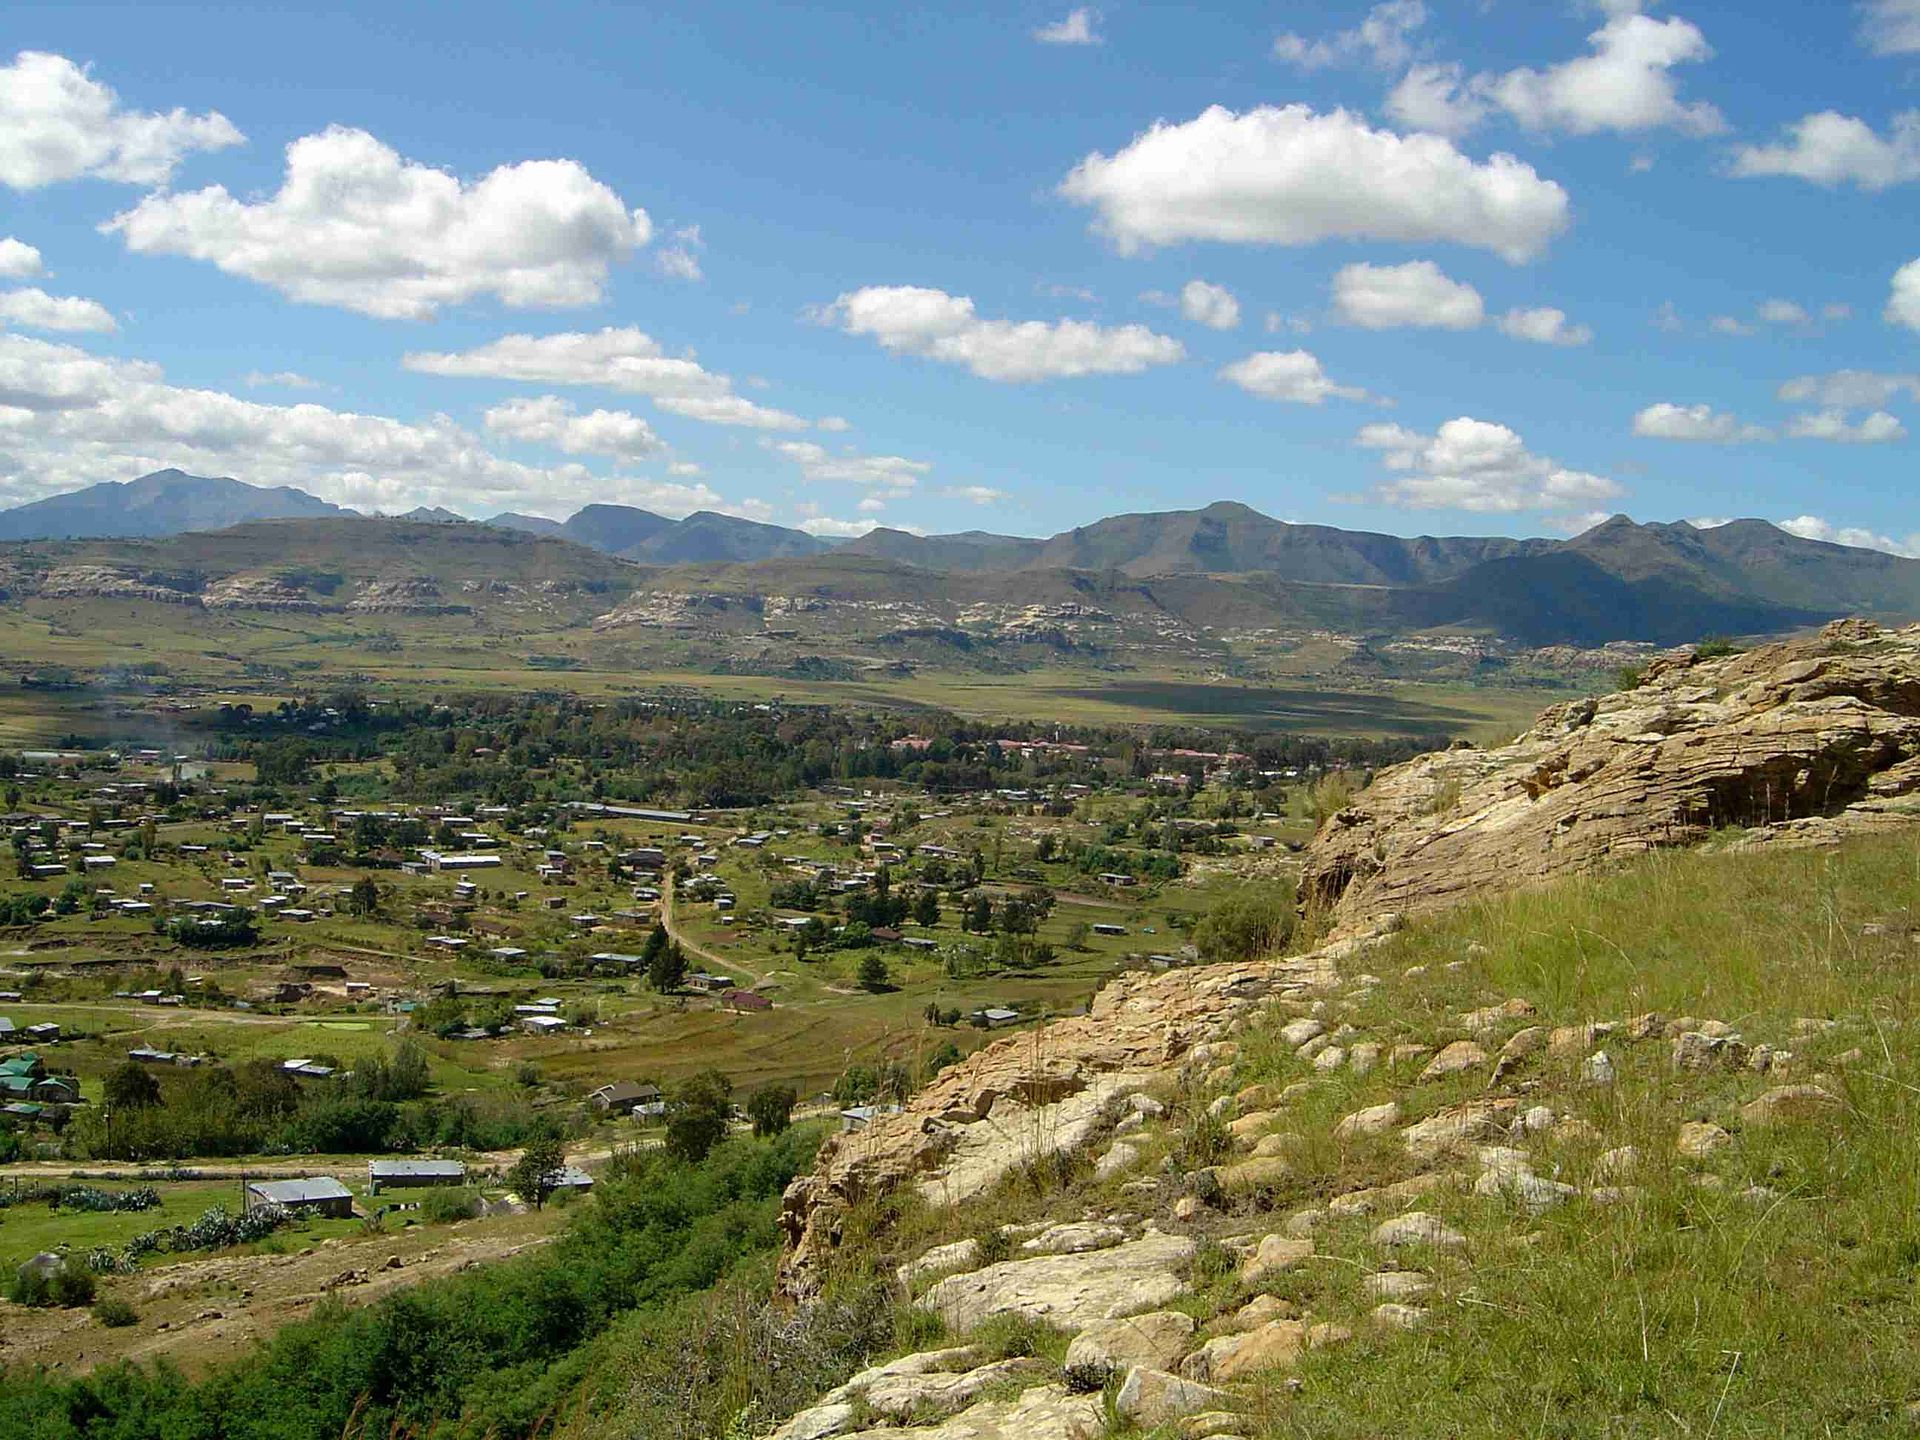 Roma, Lesotho - Wikipedia